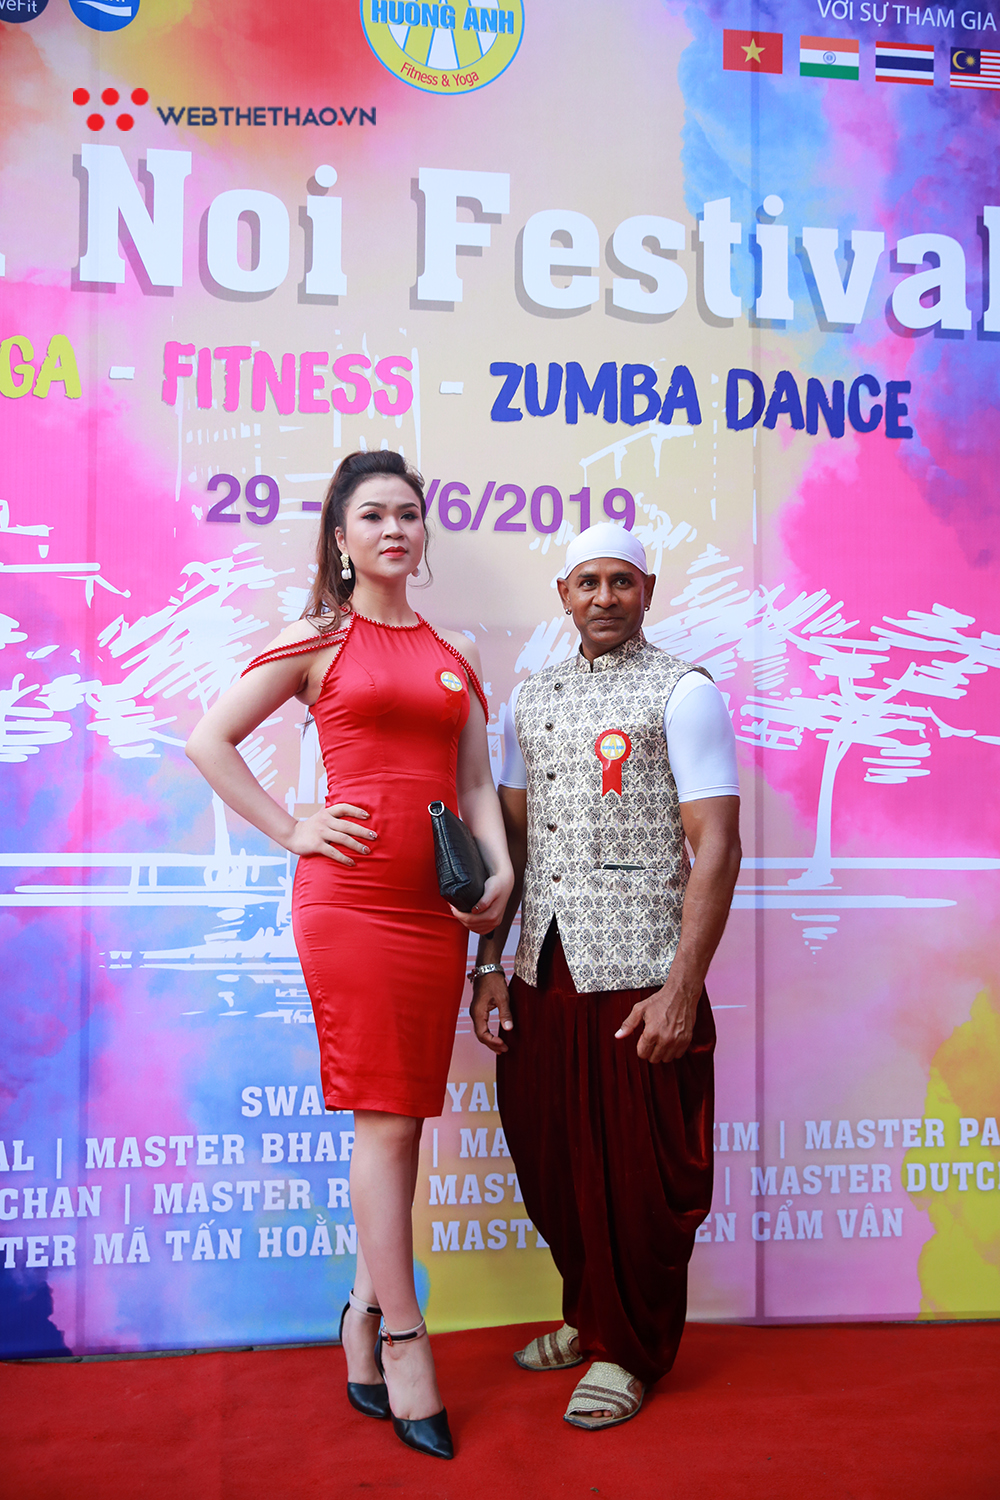 Hà Nội Yoga, Fitness, Zumba Dance Festival 2019 tưng bừng khai mạc với dàn chuyên gia hàng đầu thế giới